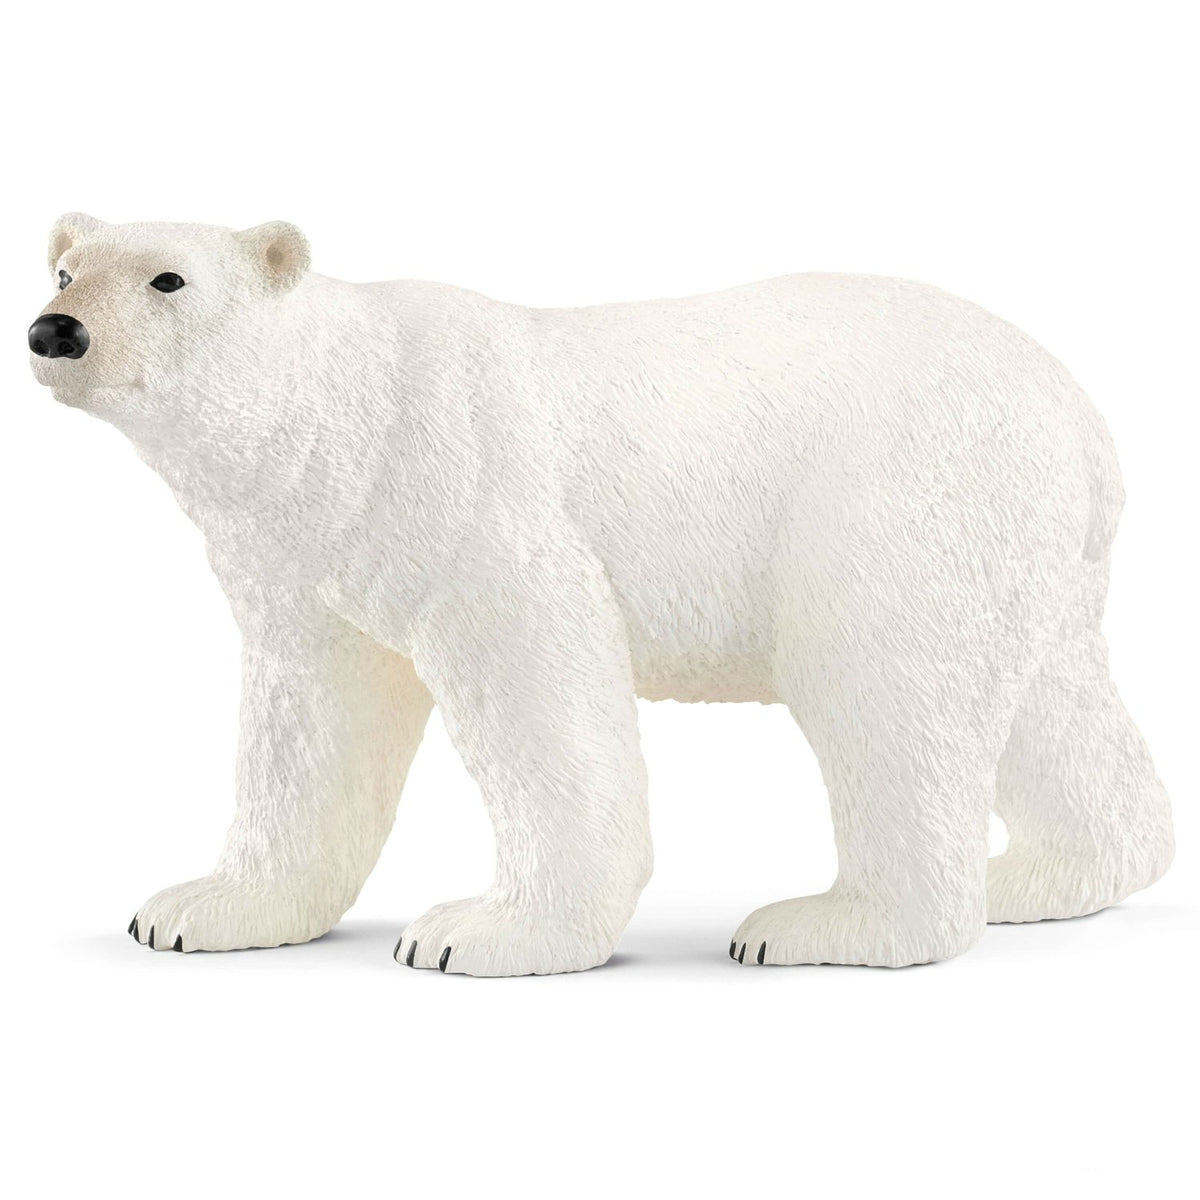 Schleich 14800 Figurine Polar Bear Toy